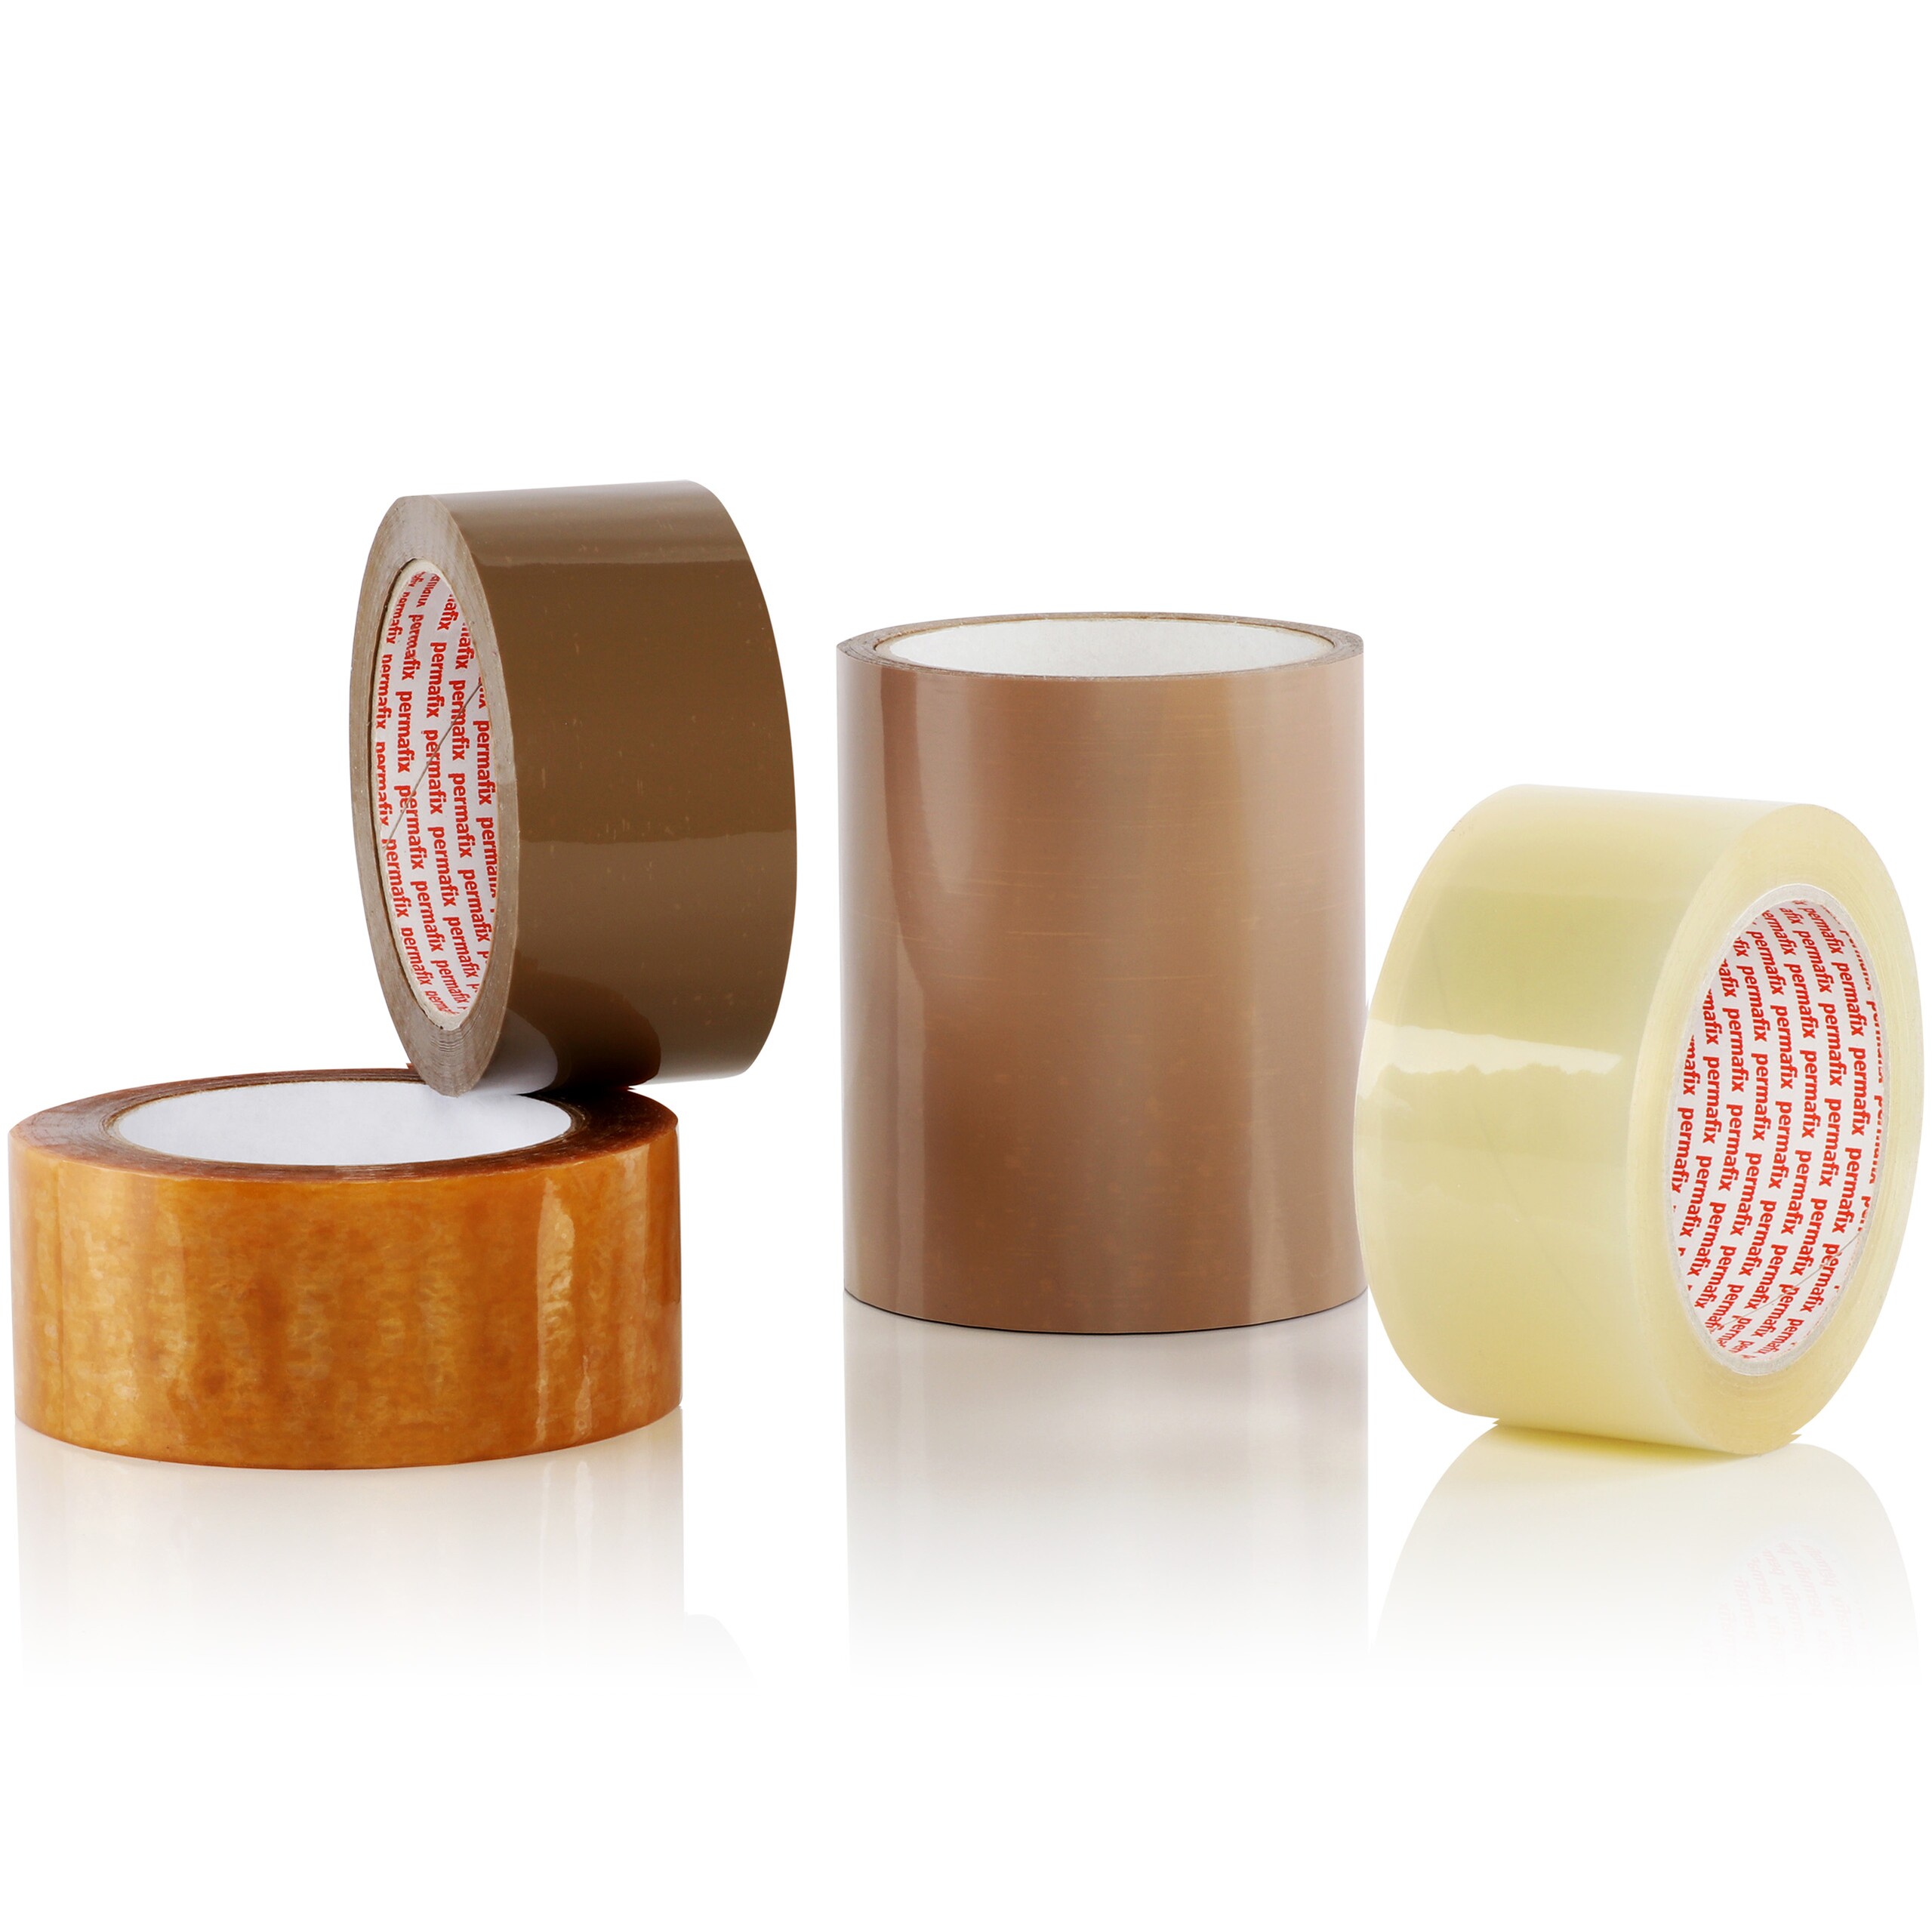 Quatre rouleaux de rubans adhésifs d'emballage neutres de diverses qualités et dimensions.